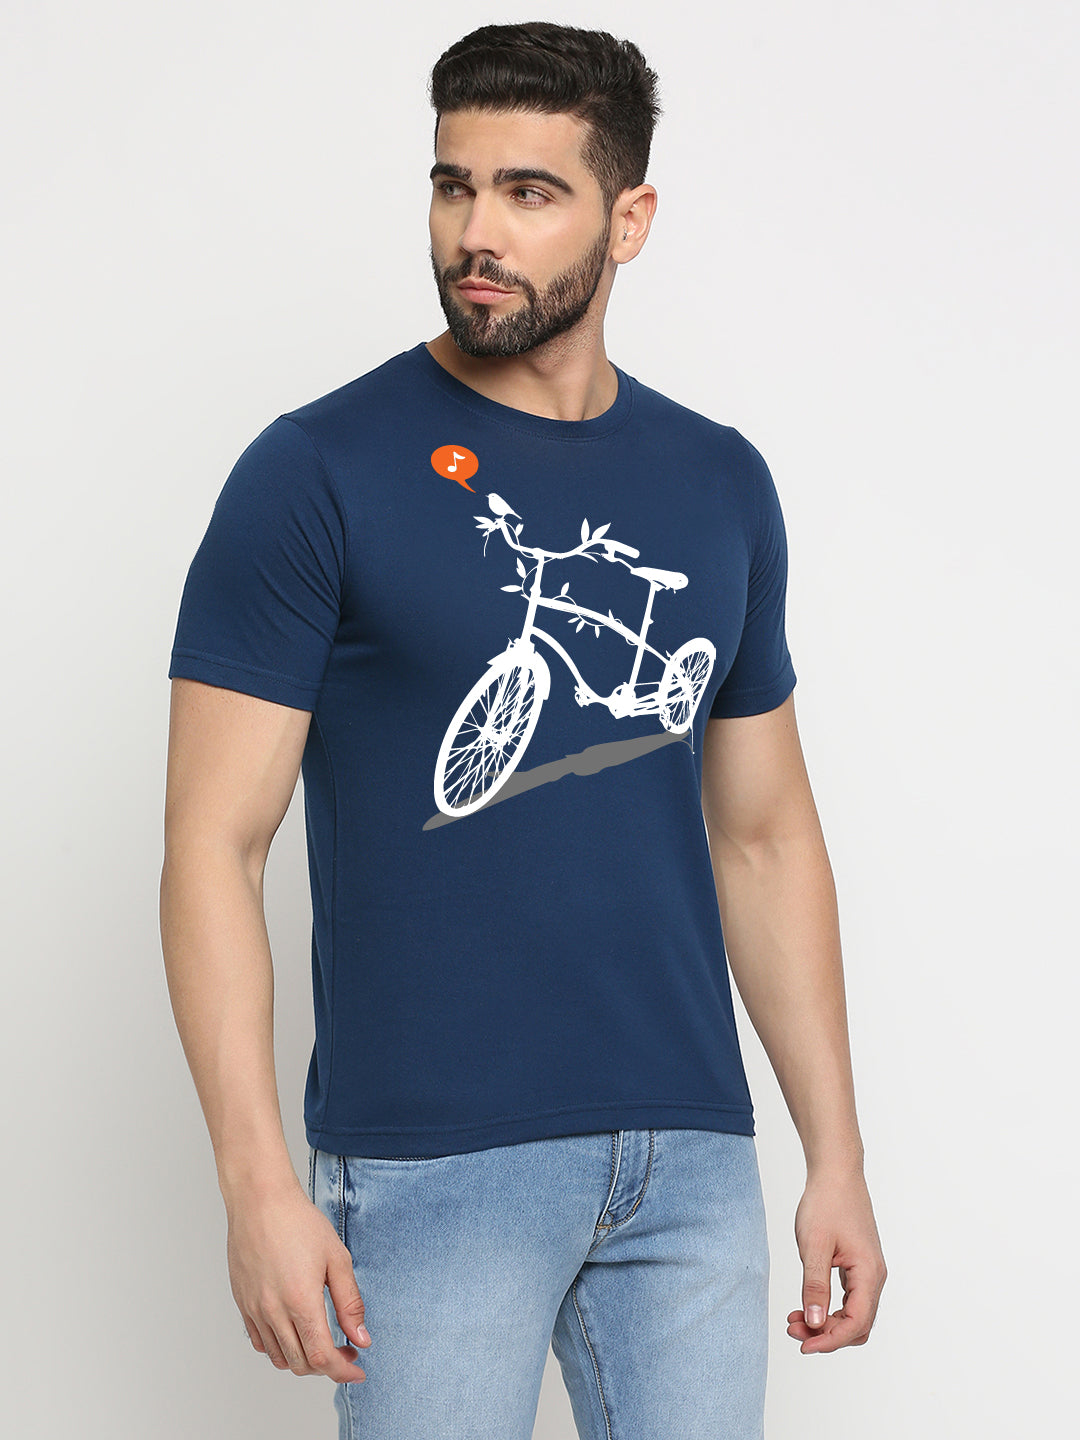 "Nature's Calling" Biking T-Shirt